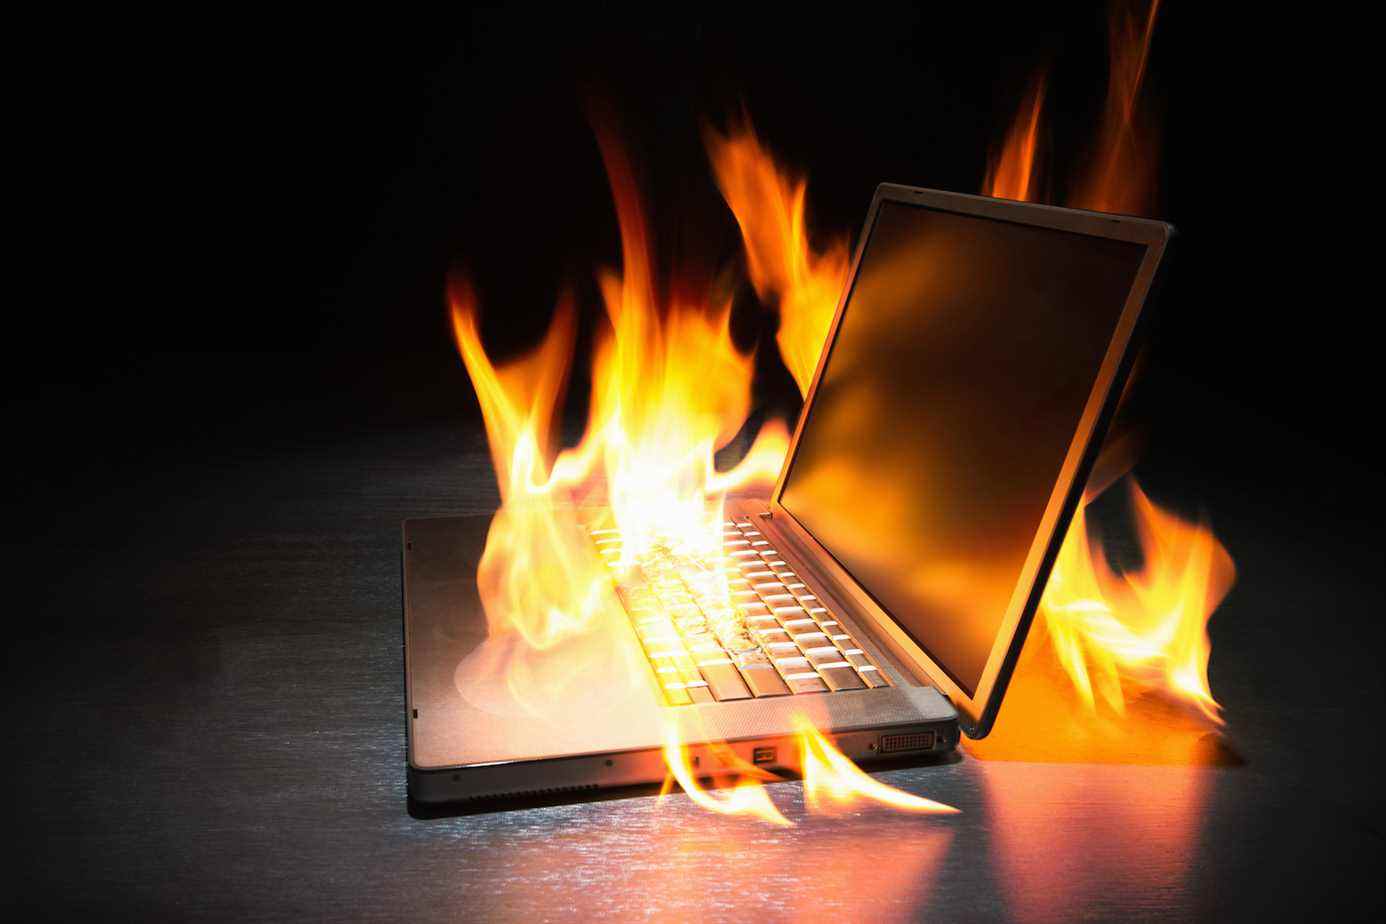 Un ordinateur portable ravagé par les flammes